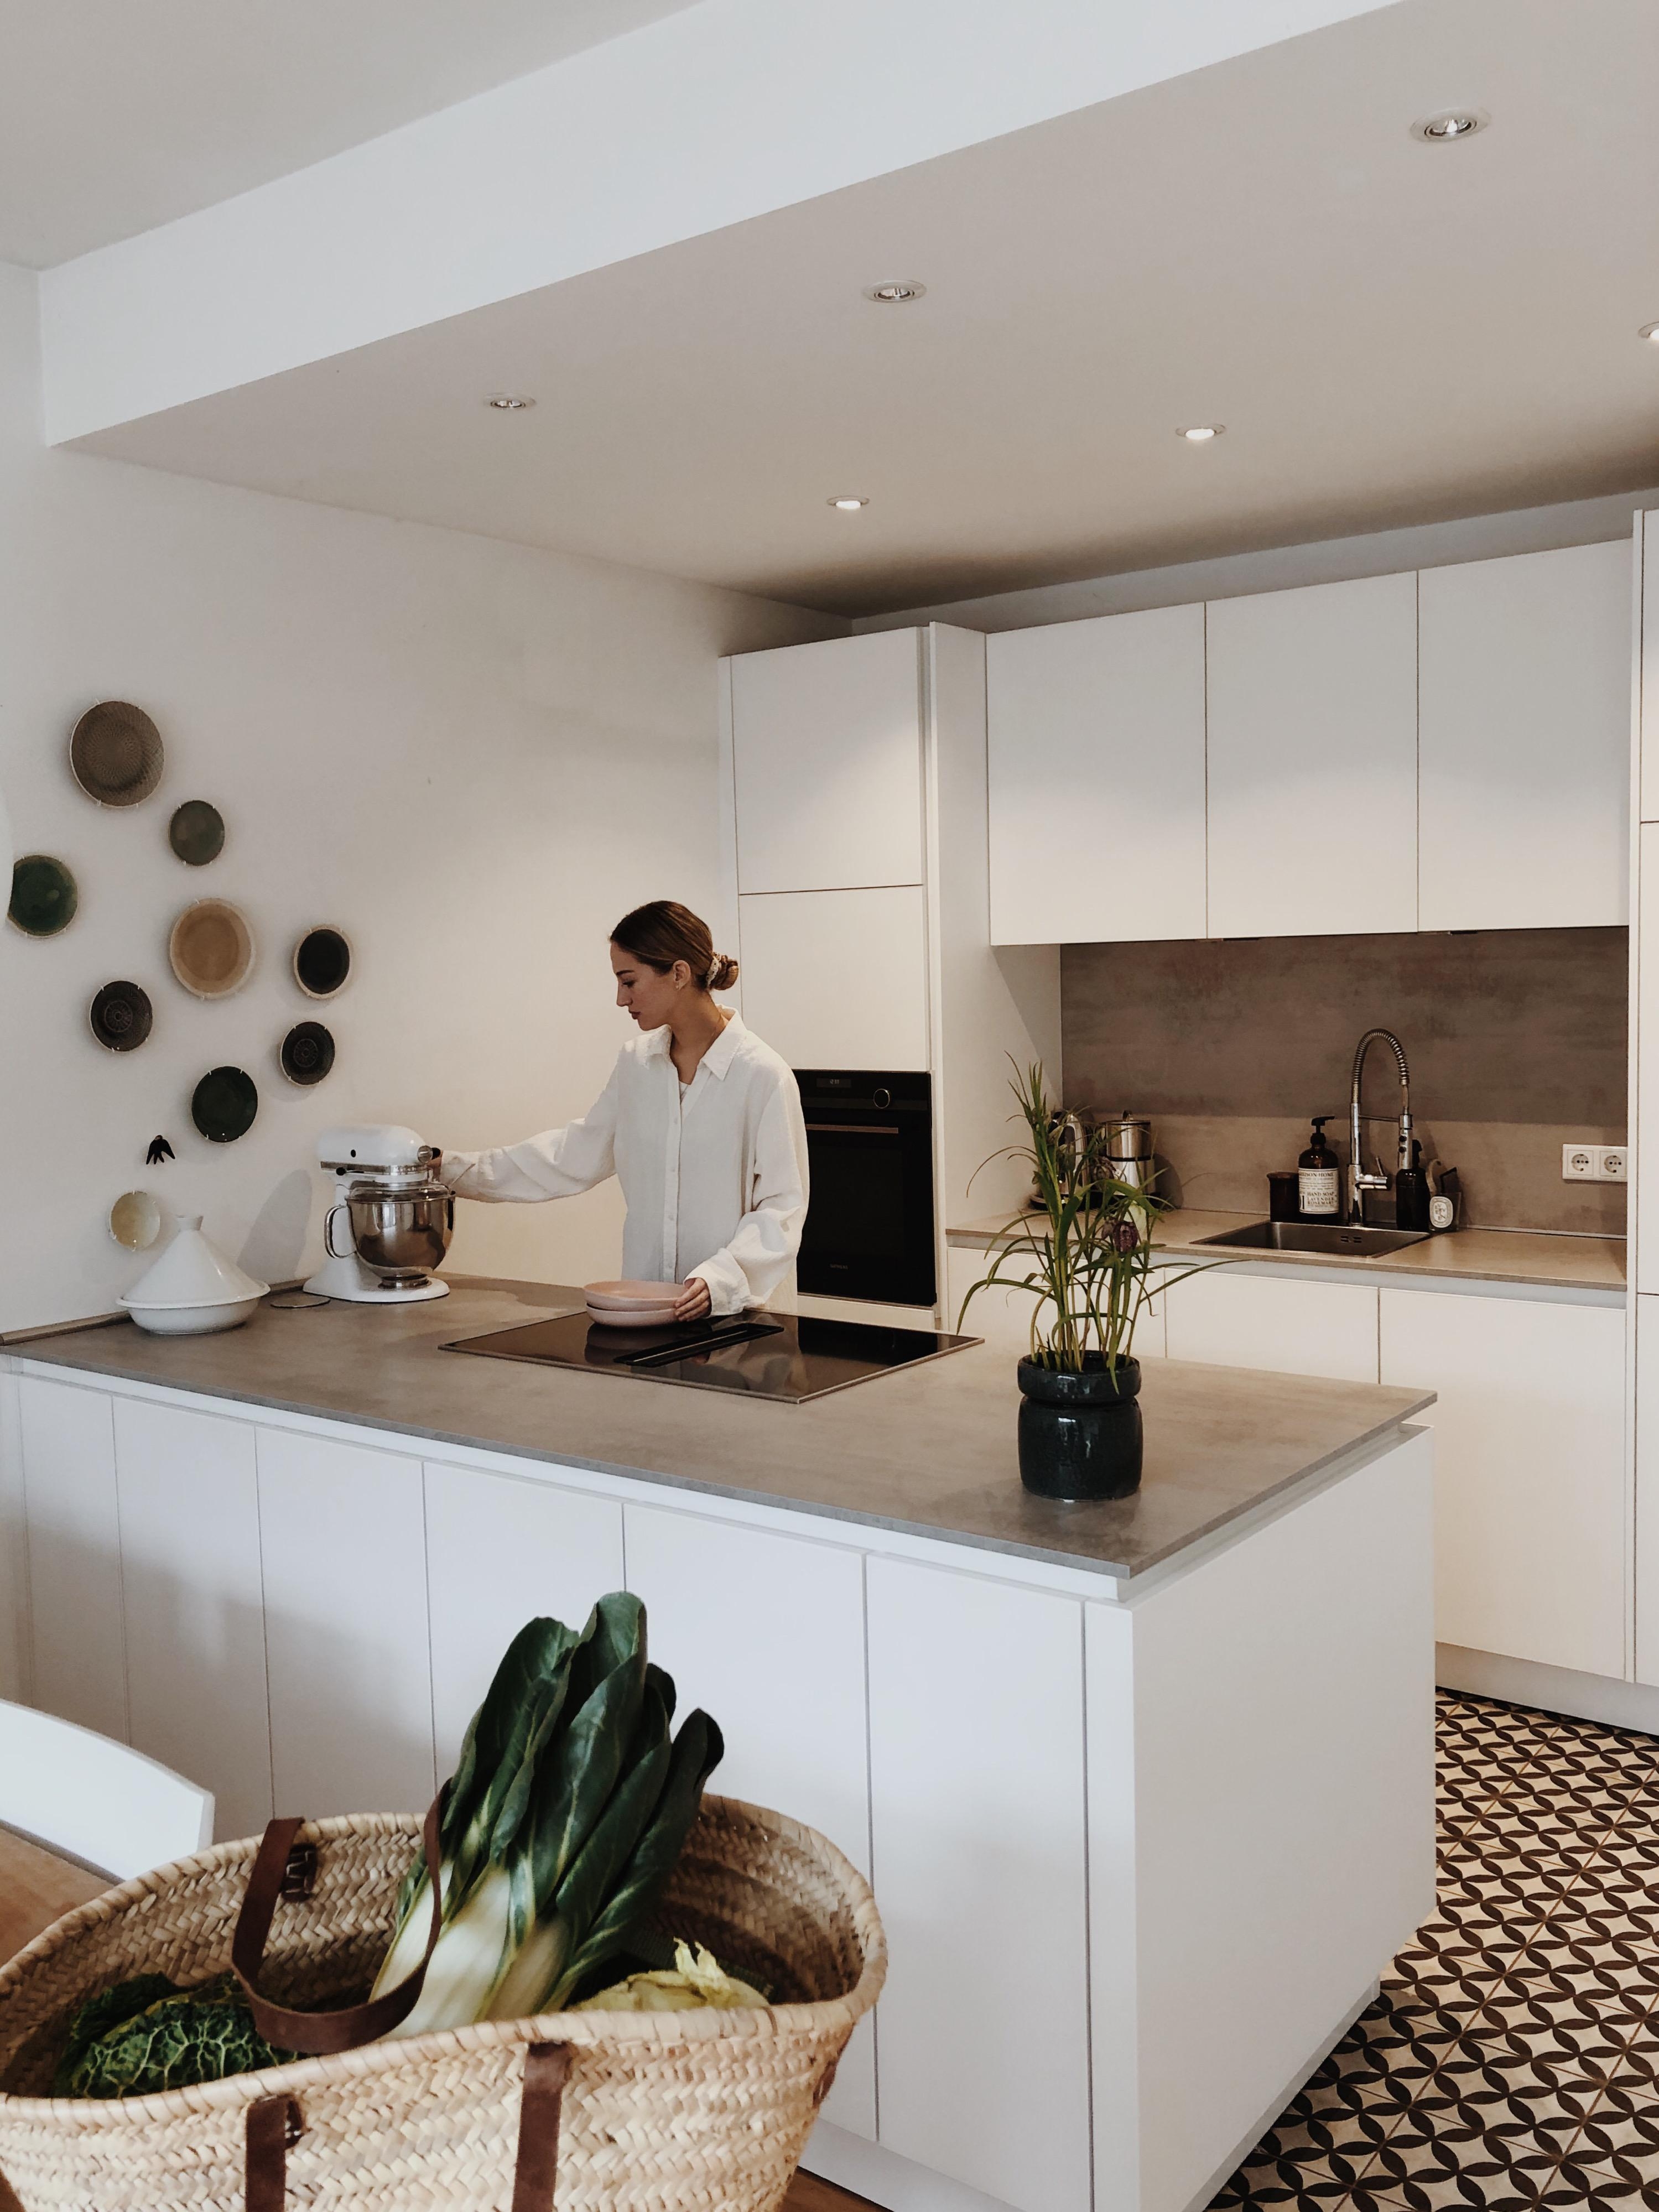 Küchenliebe 🤍
#interior #küche #home #meinzuhause #whitekitchen #kitchen